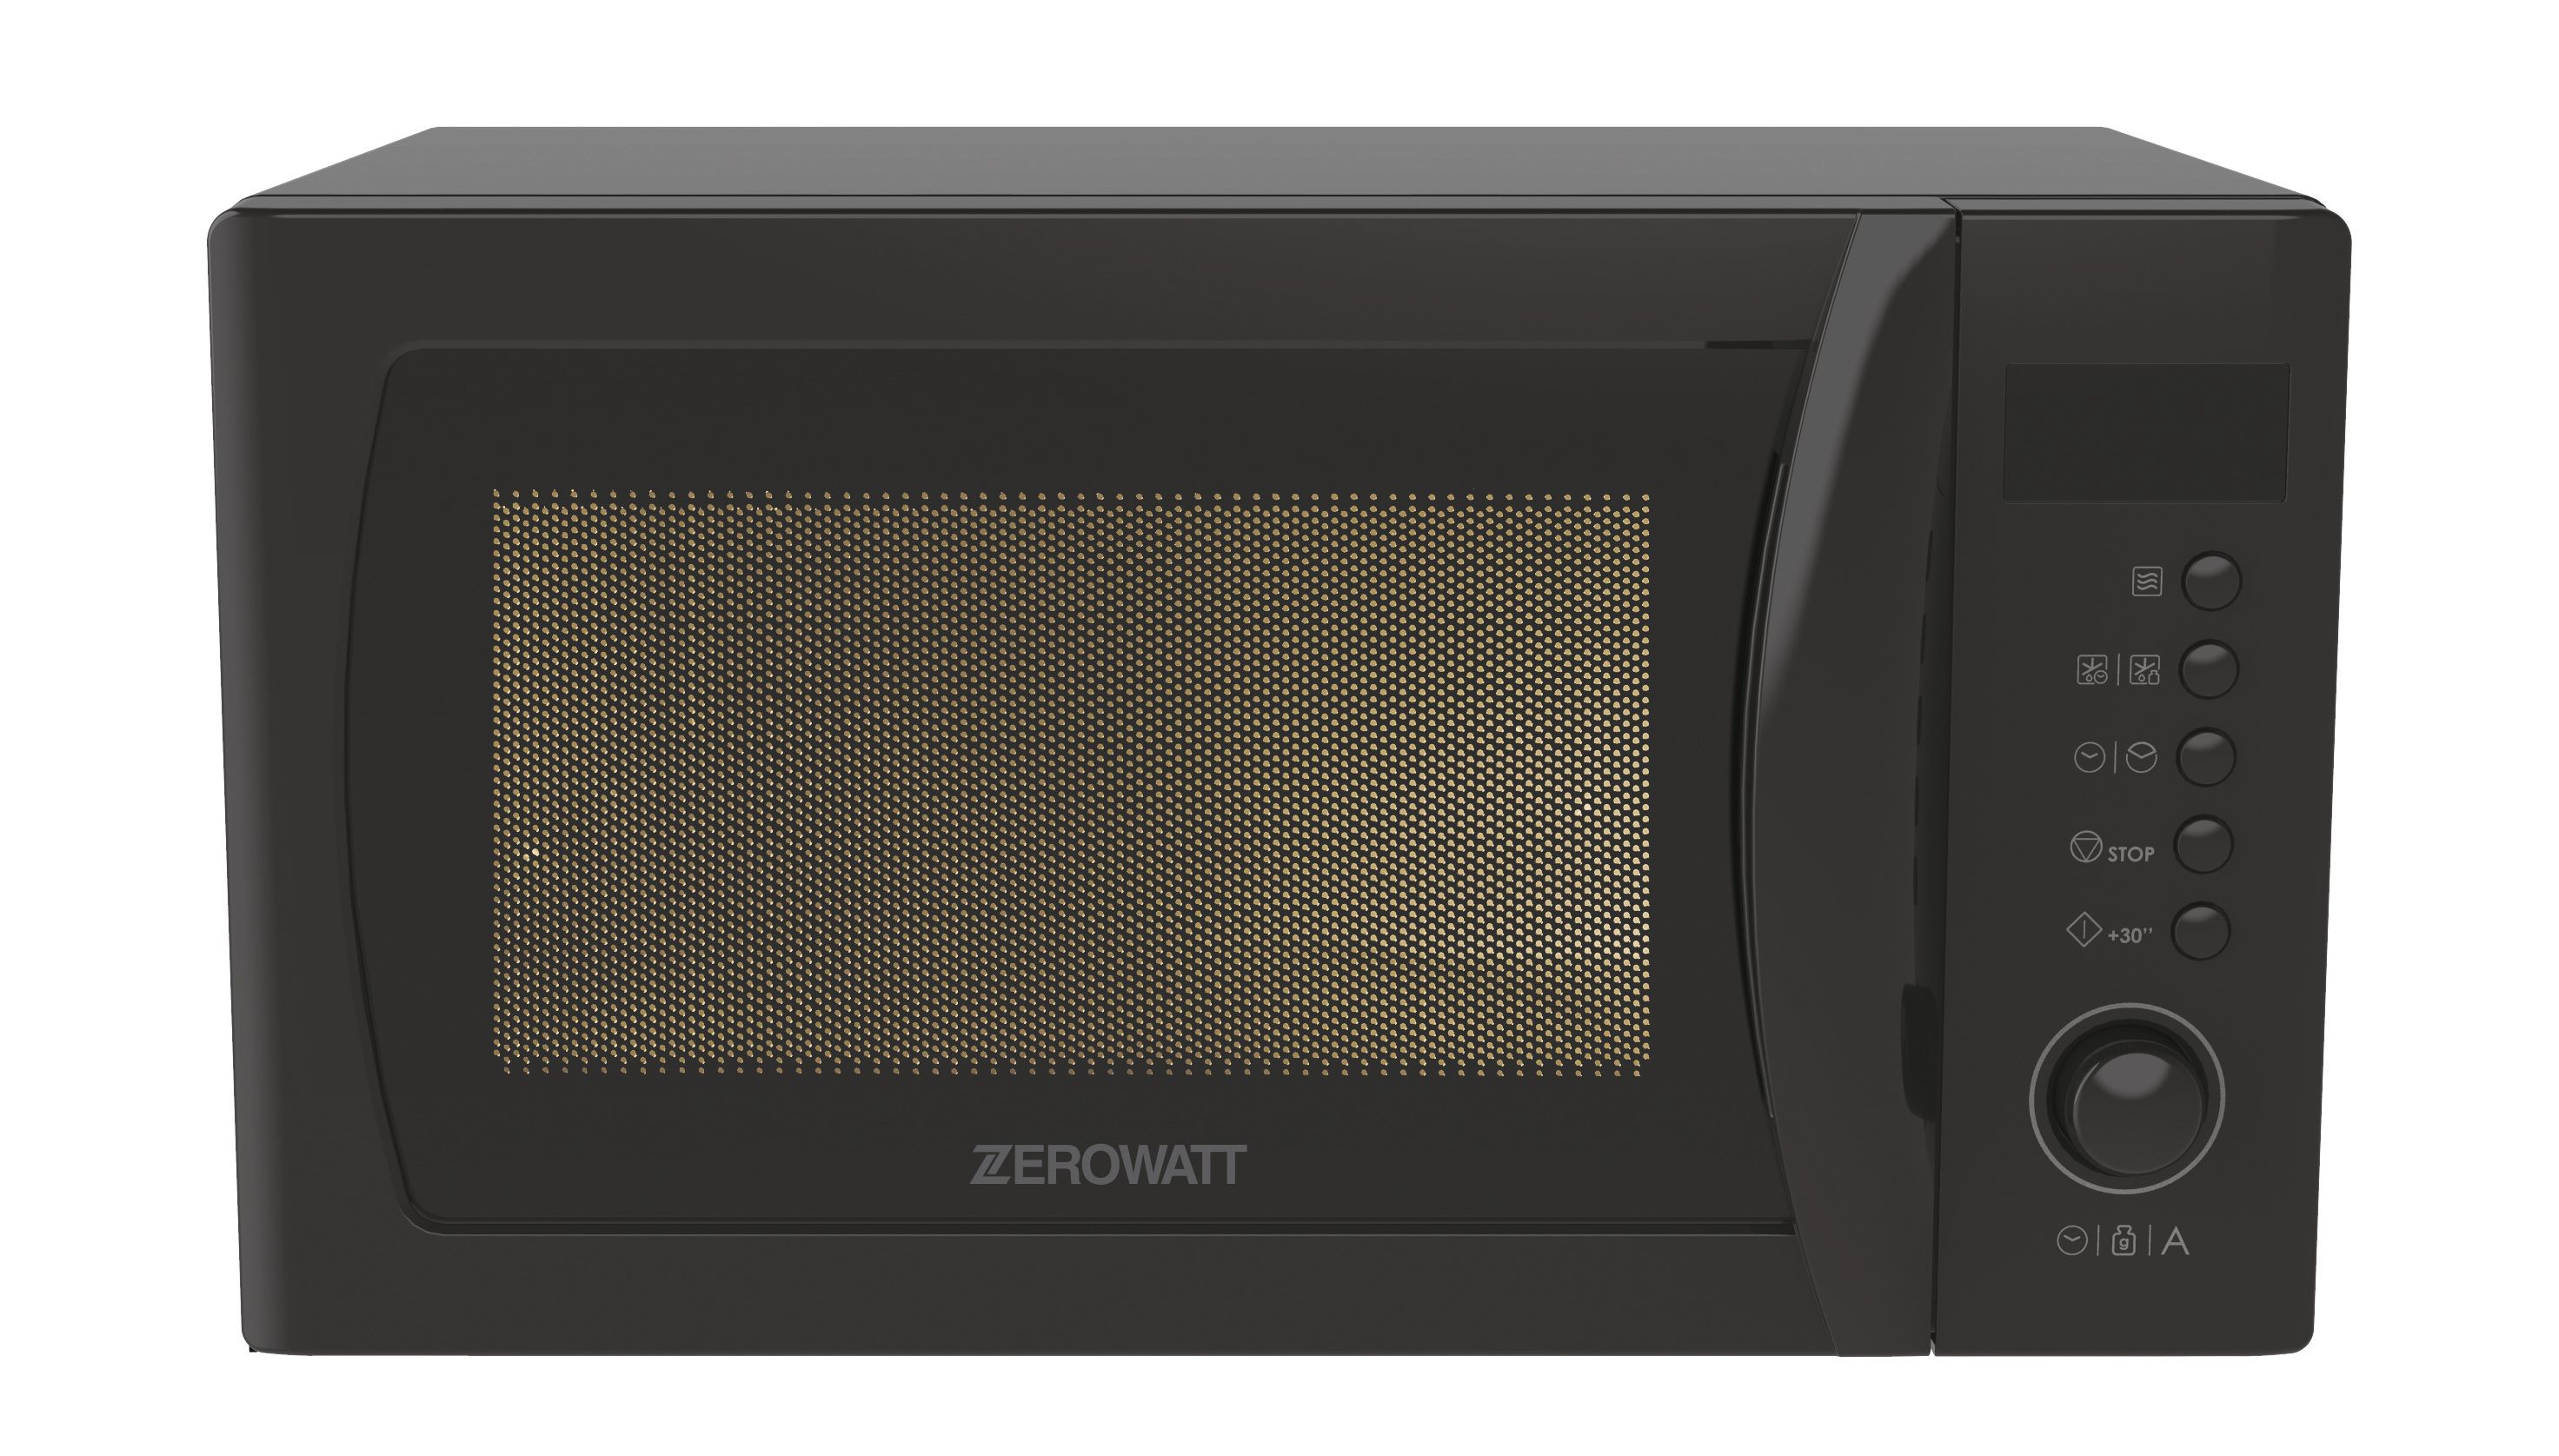 Микроволновая печь Zerowatt Zmwa20sdlb-07, цвет черный 548078 - фото 1